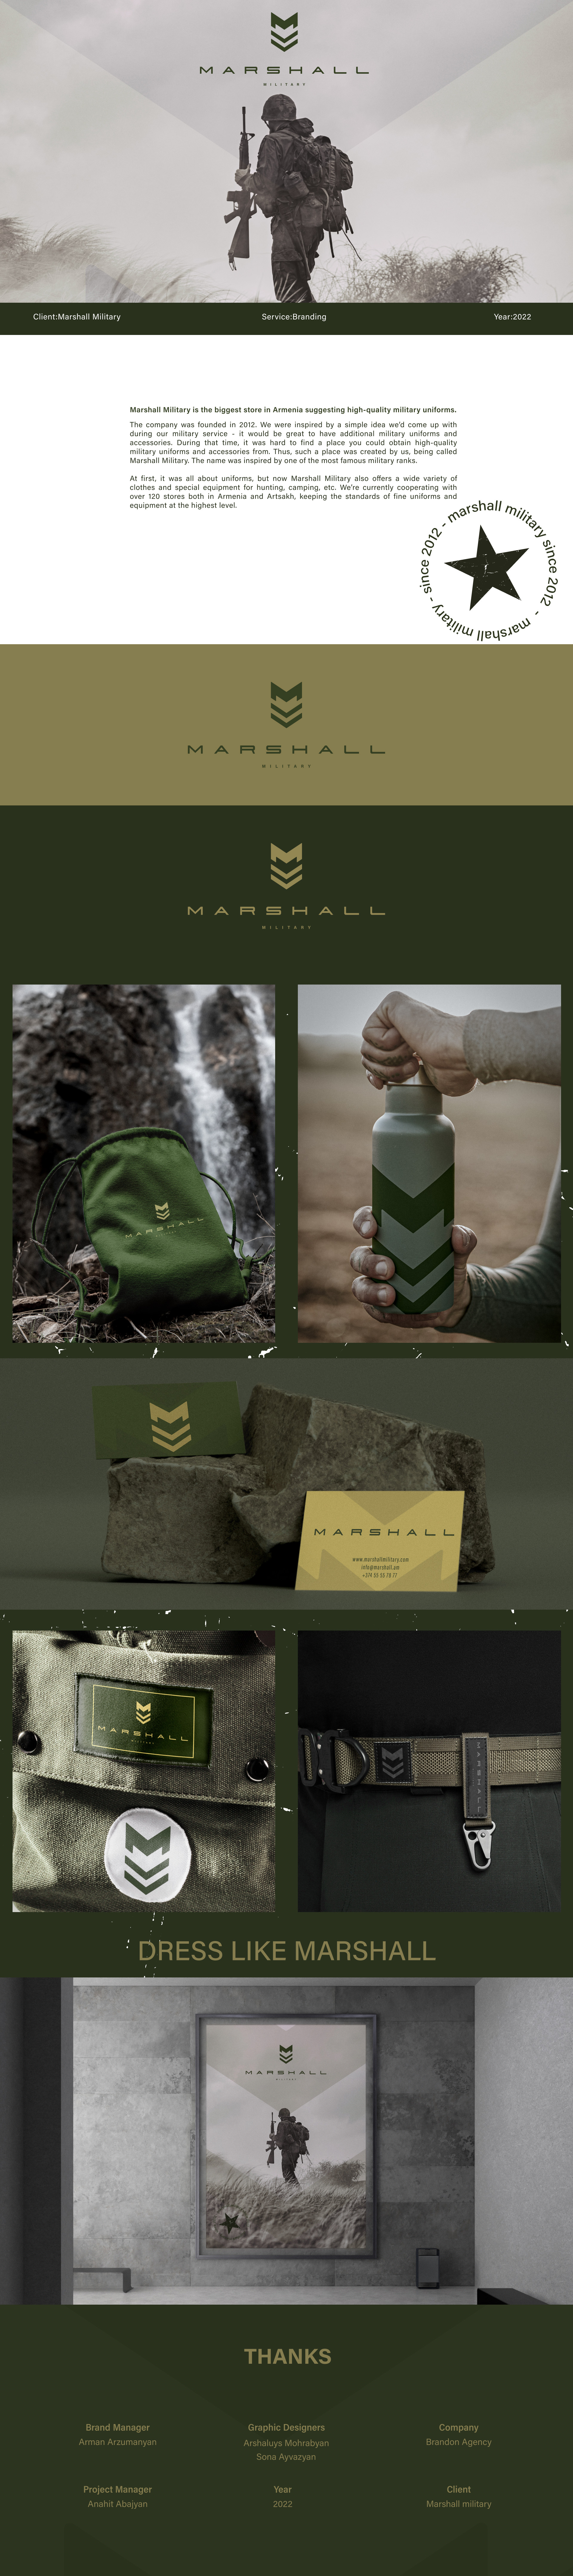 Marshall military branding